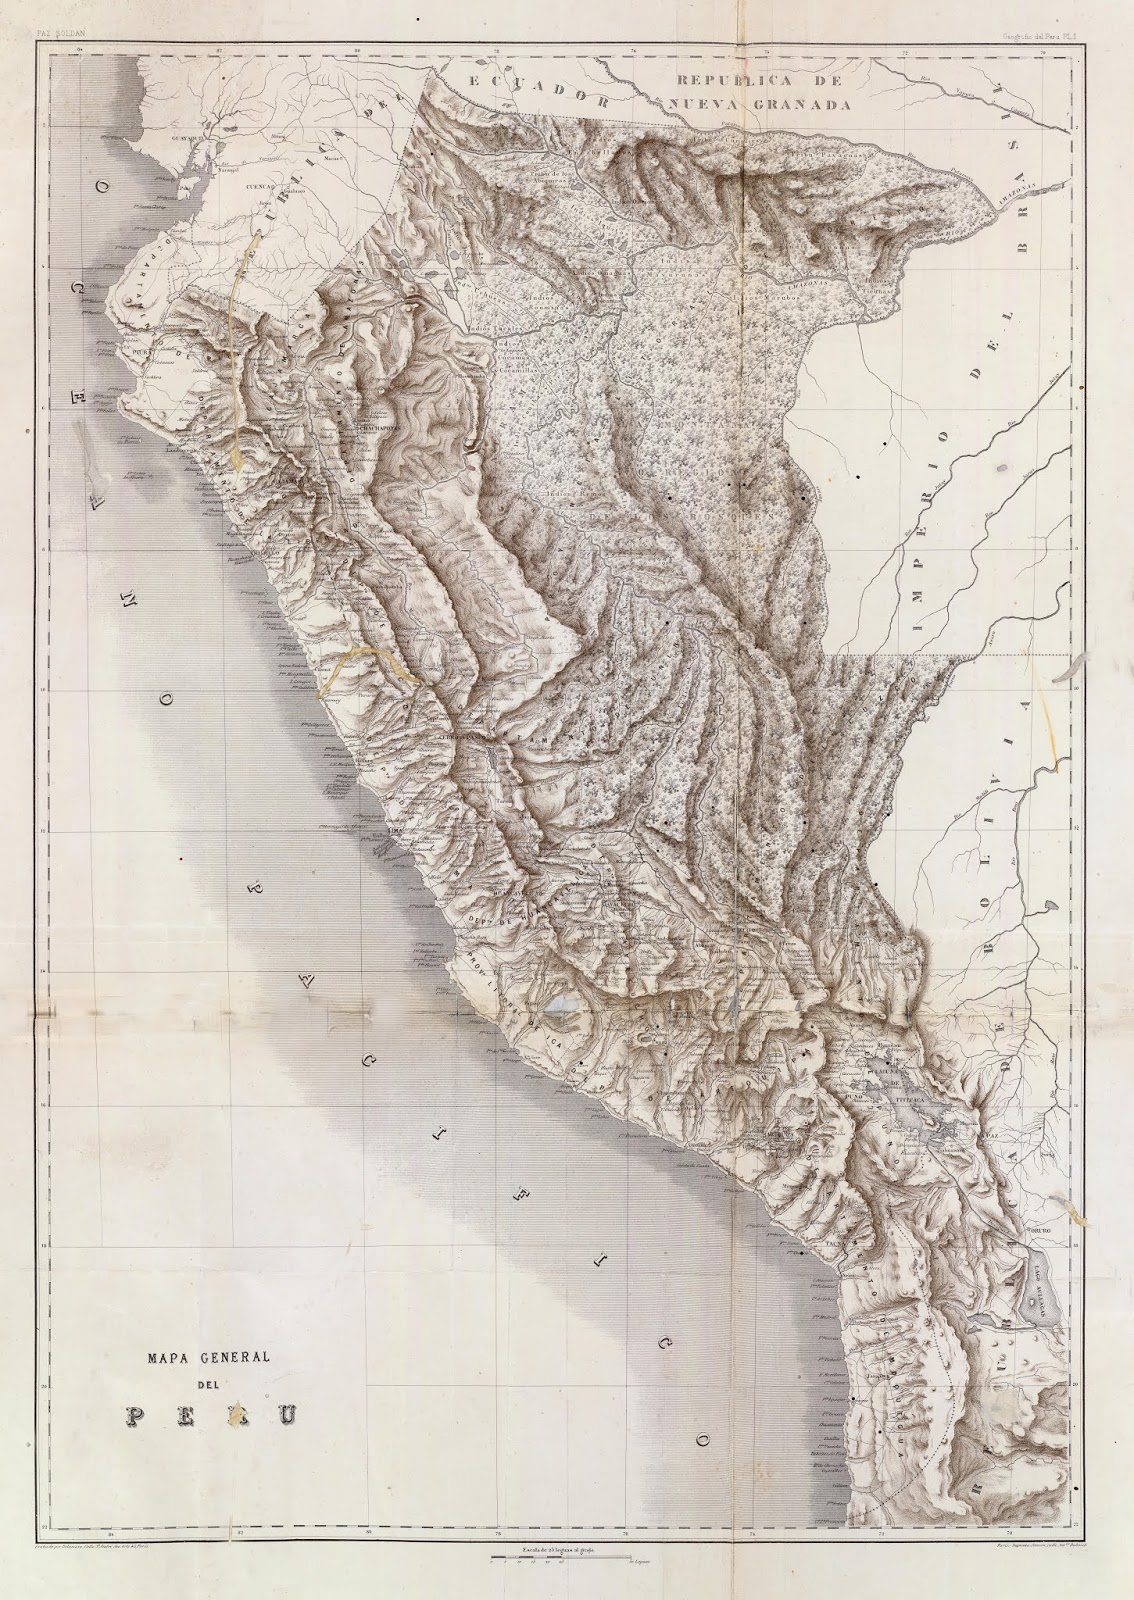 Mapa general del Peru 1863